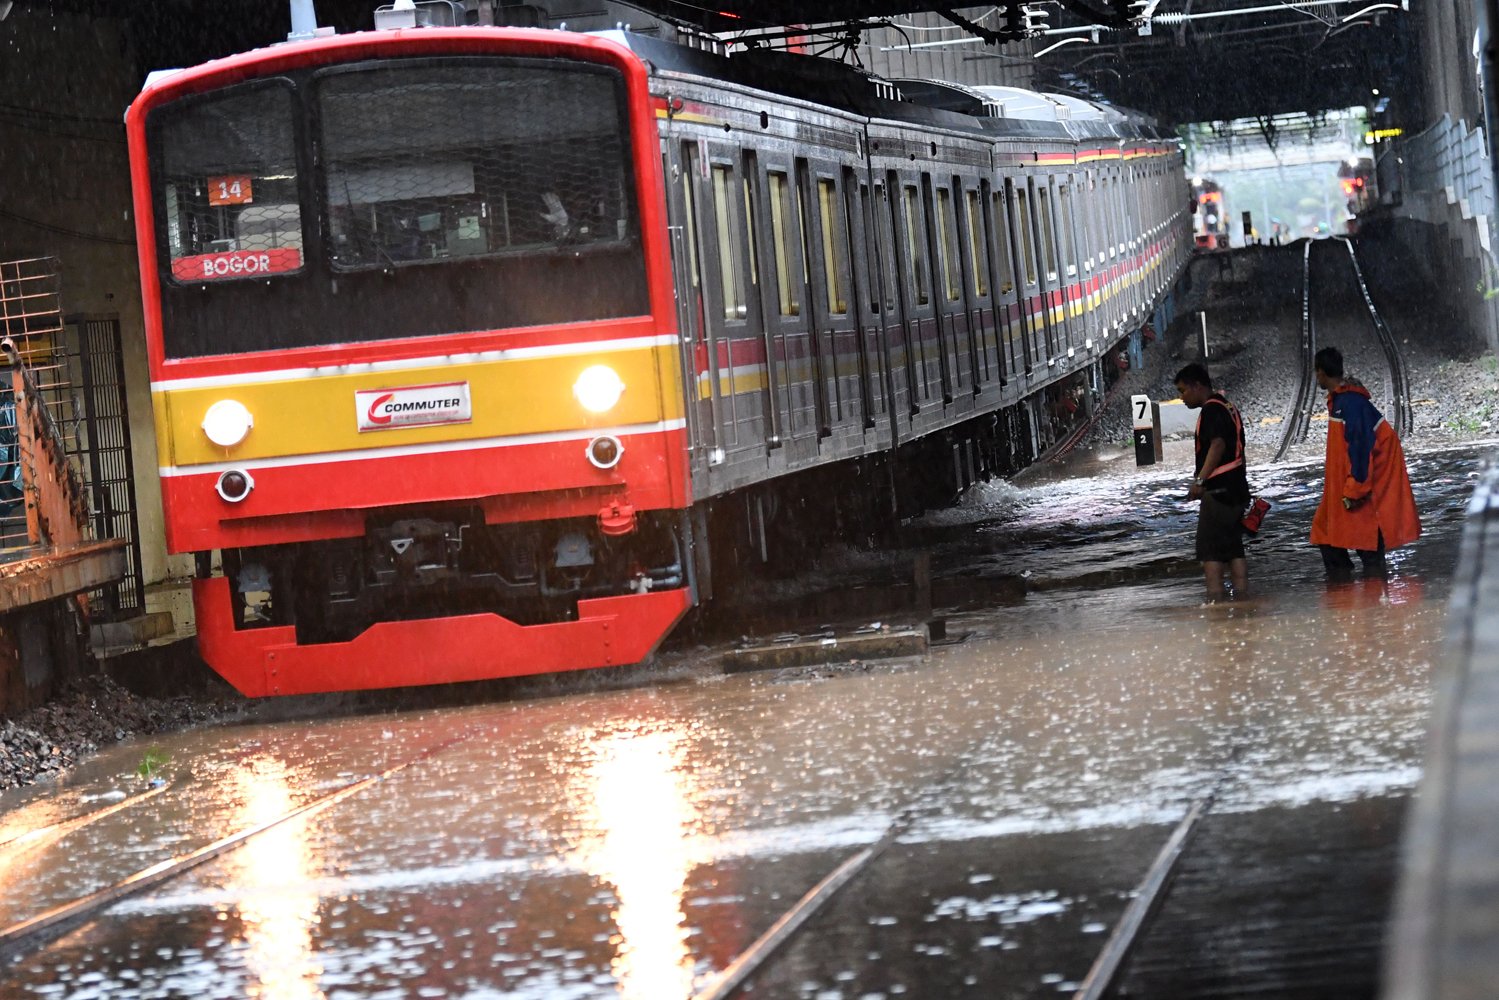 Salah satu rangkaian KRL Commuterline melintas perlahan pada jalur rel yang terendam banjir di Stasiun KA Sudirman, Menteng, Jakarta, Rabu (1/1/2020). Banjir yang menggenangi sejumlah titik pada jalur rel di Jakarta berdampak pada gangguan pelayanan sejumlah rute KRL Commuterline Jabodetabek. 